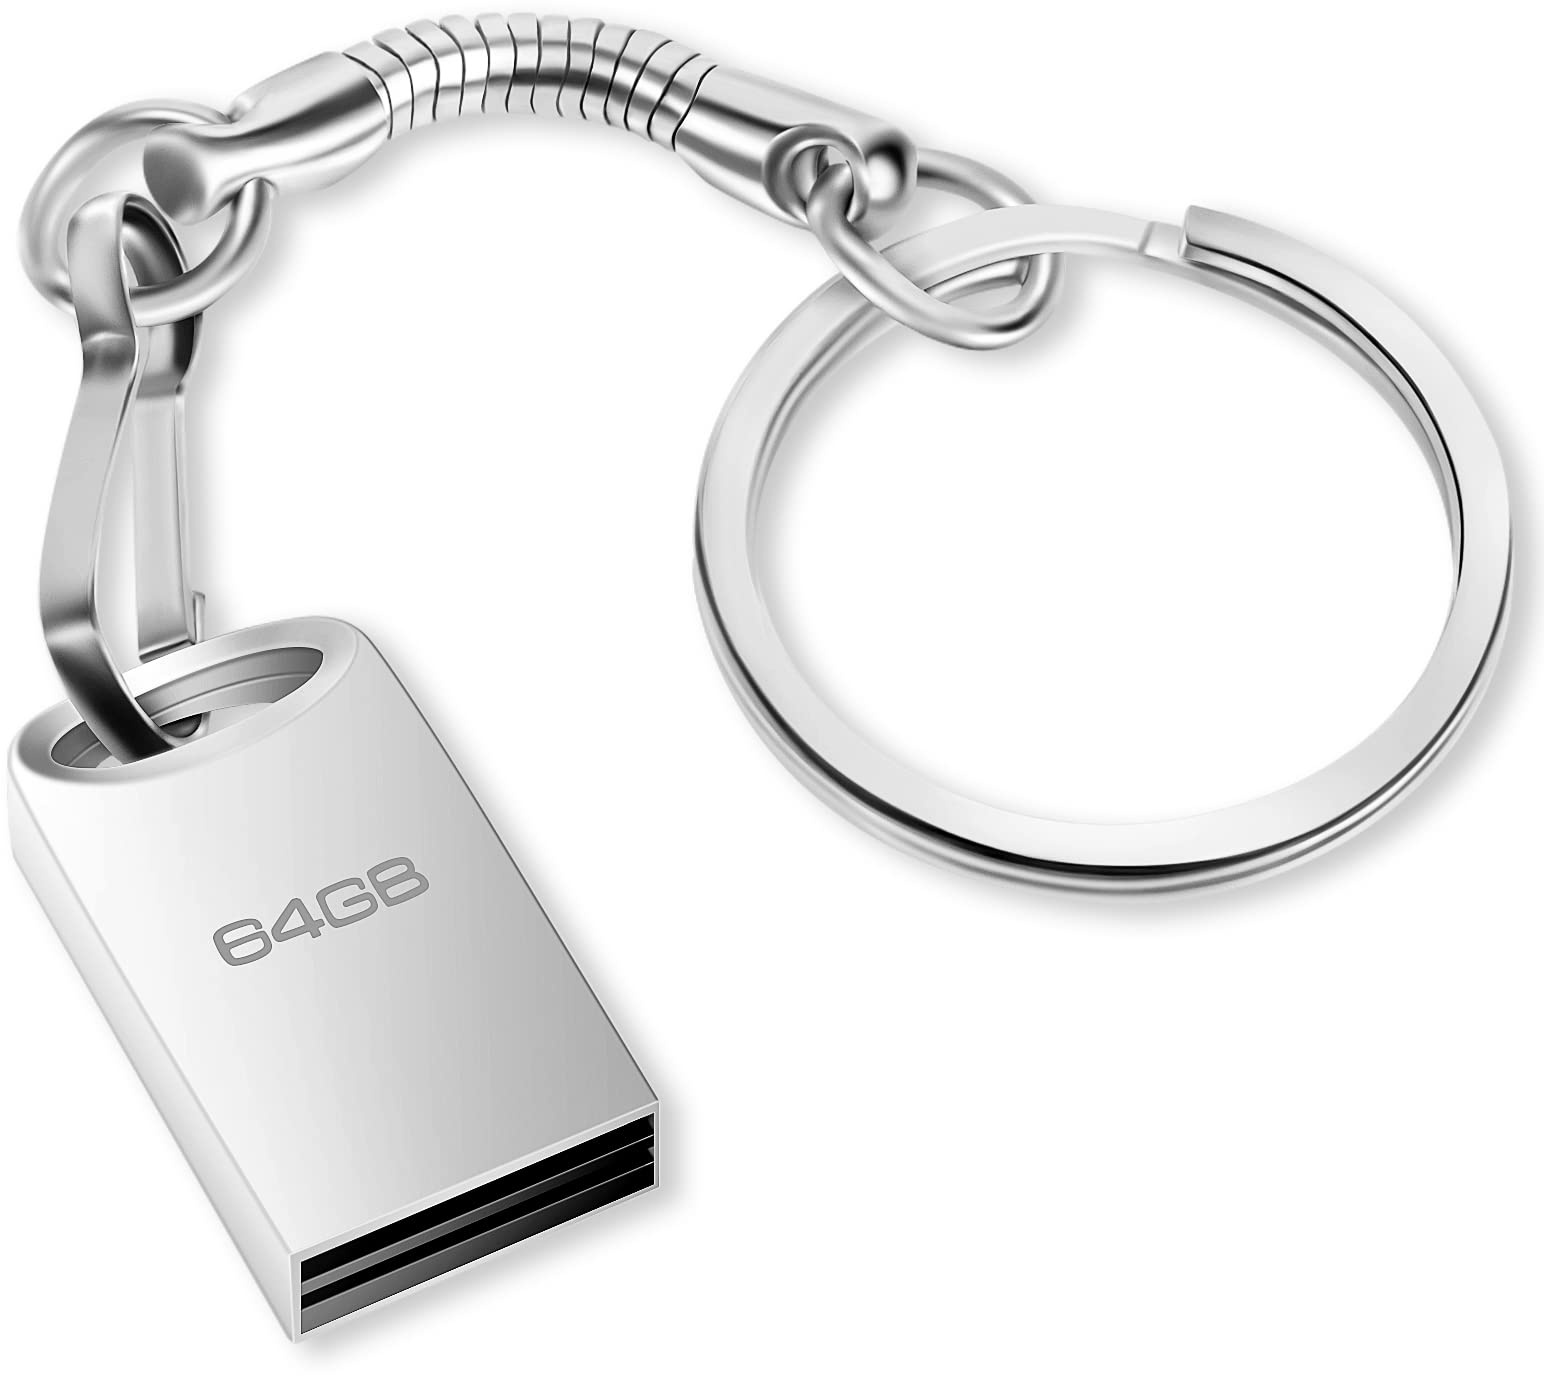 USB Stick 64GB, Mini Speicherstick 64GB USB 2.0 Flash Laufwerk 64 GB Metall Pen Drive Memory Stick mit Schlüsselanhänge für PC, Laptop, TV, Lautsprecher, Auto, Externer Datenspeicher etc (Silber)